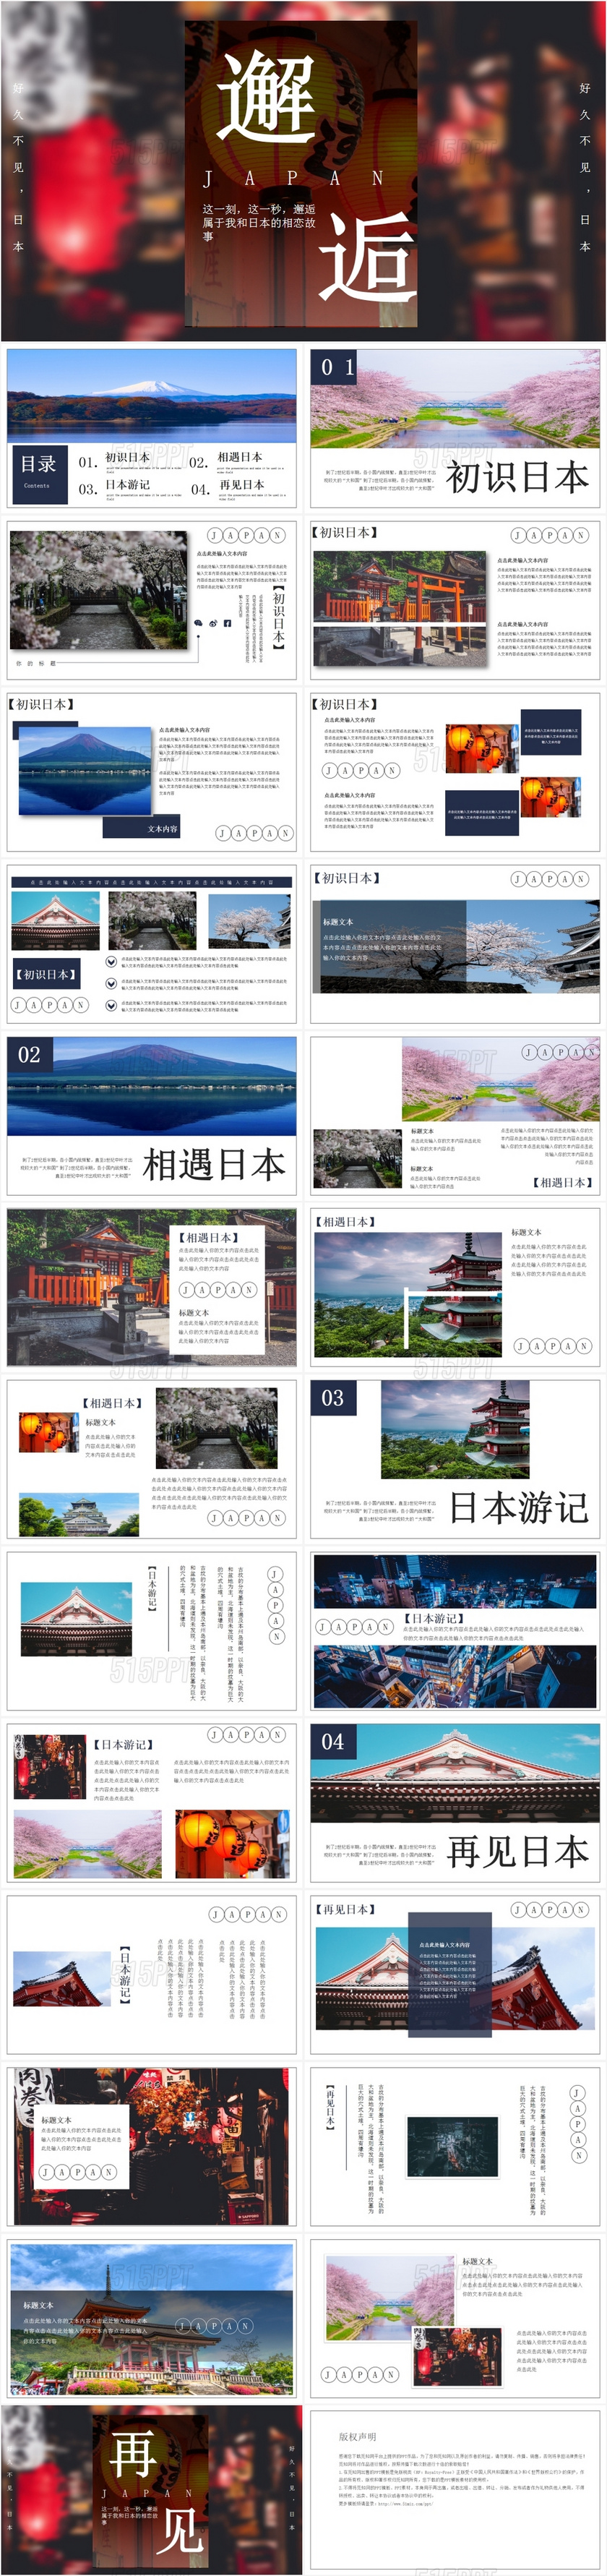 文艺感小清新日本旅游文化推广宣传介绍图册展示PPT模板